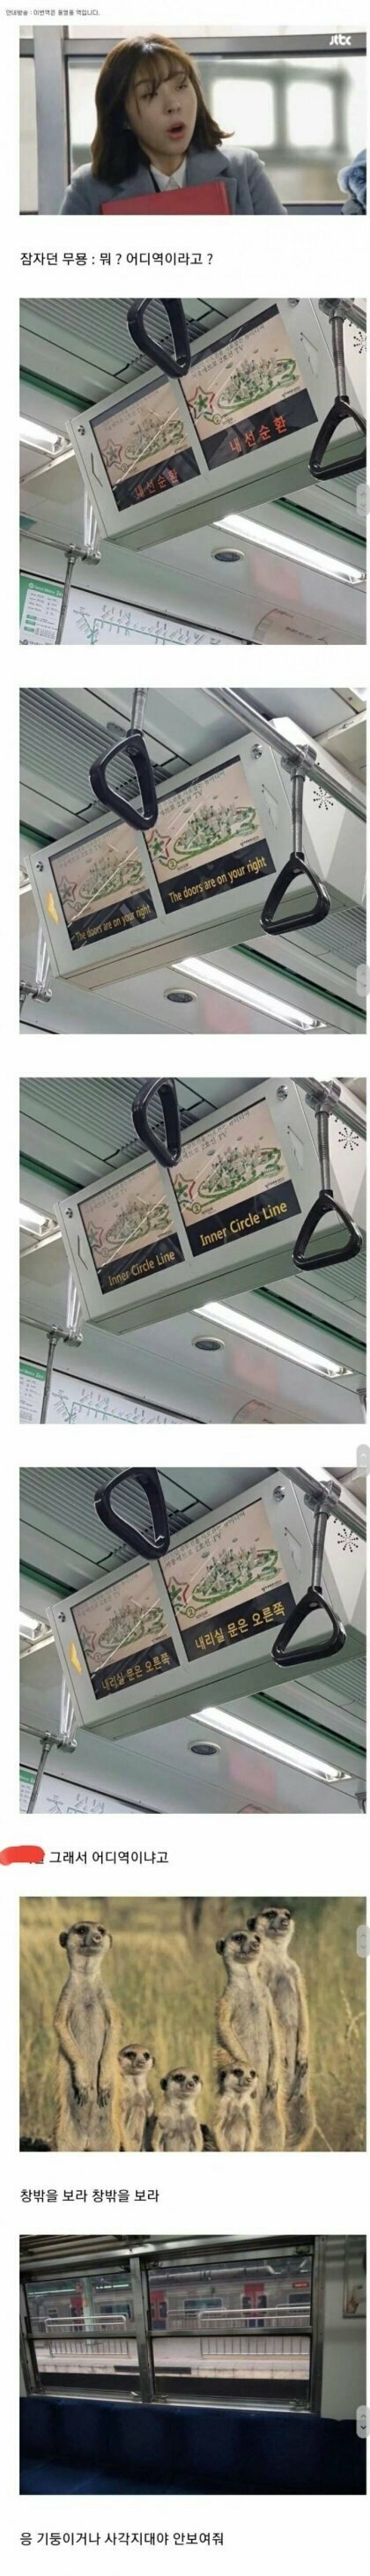 한국지하철 최대 문제점.jpg